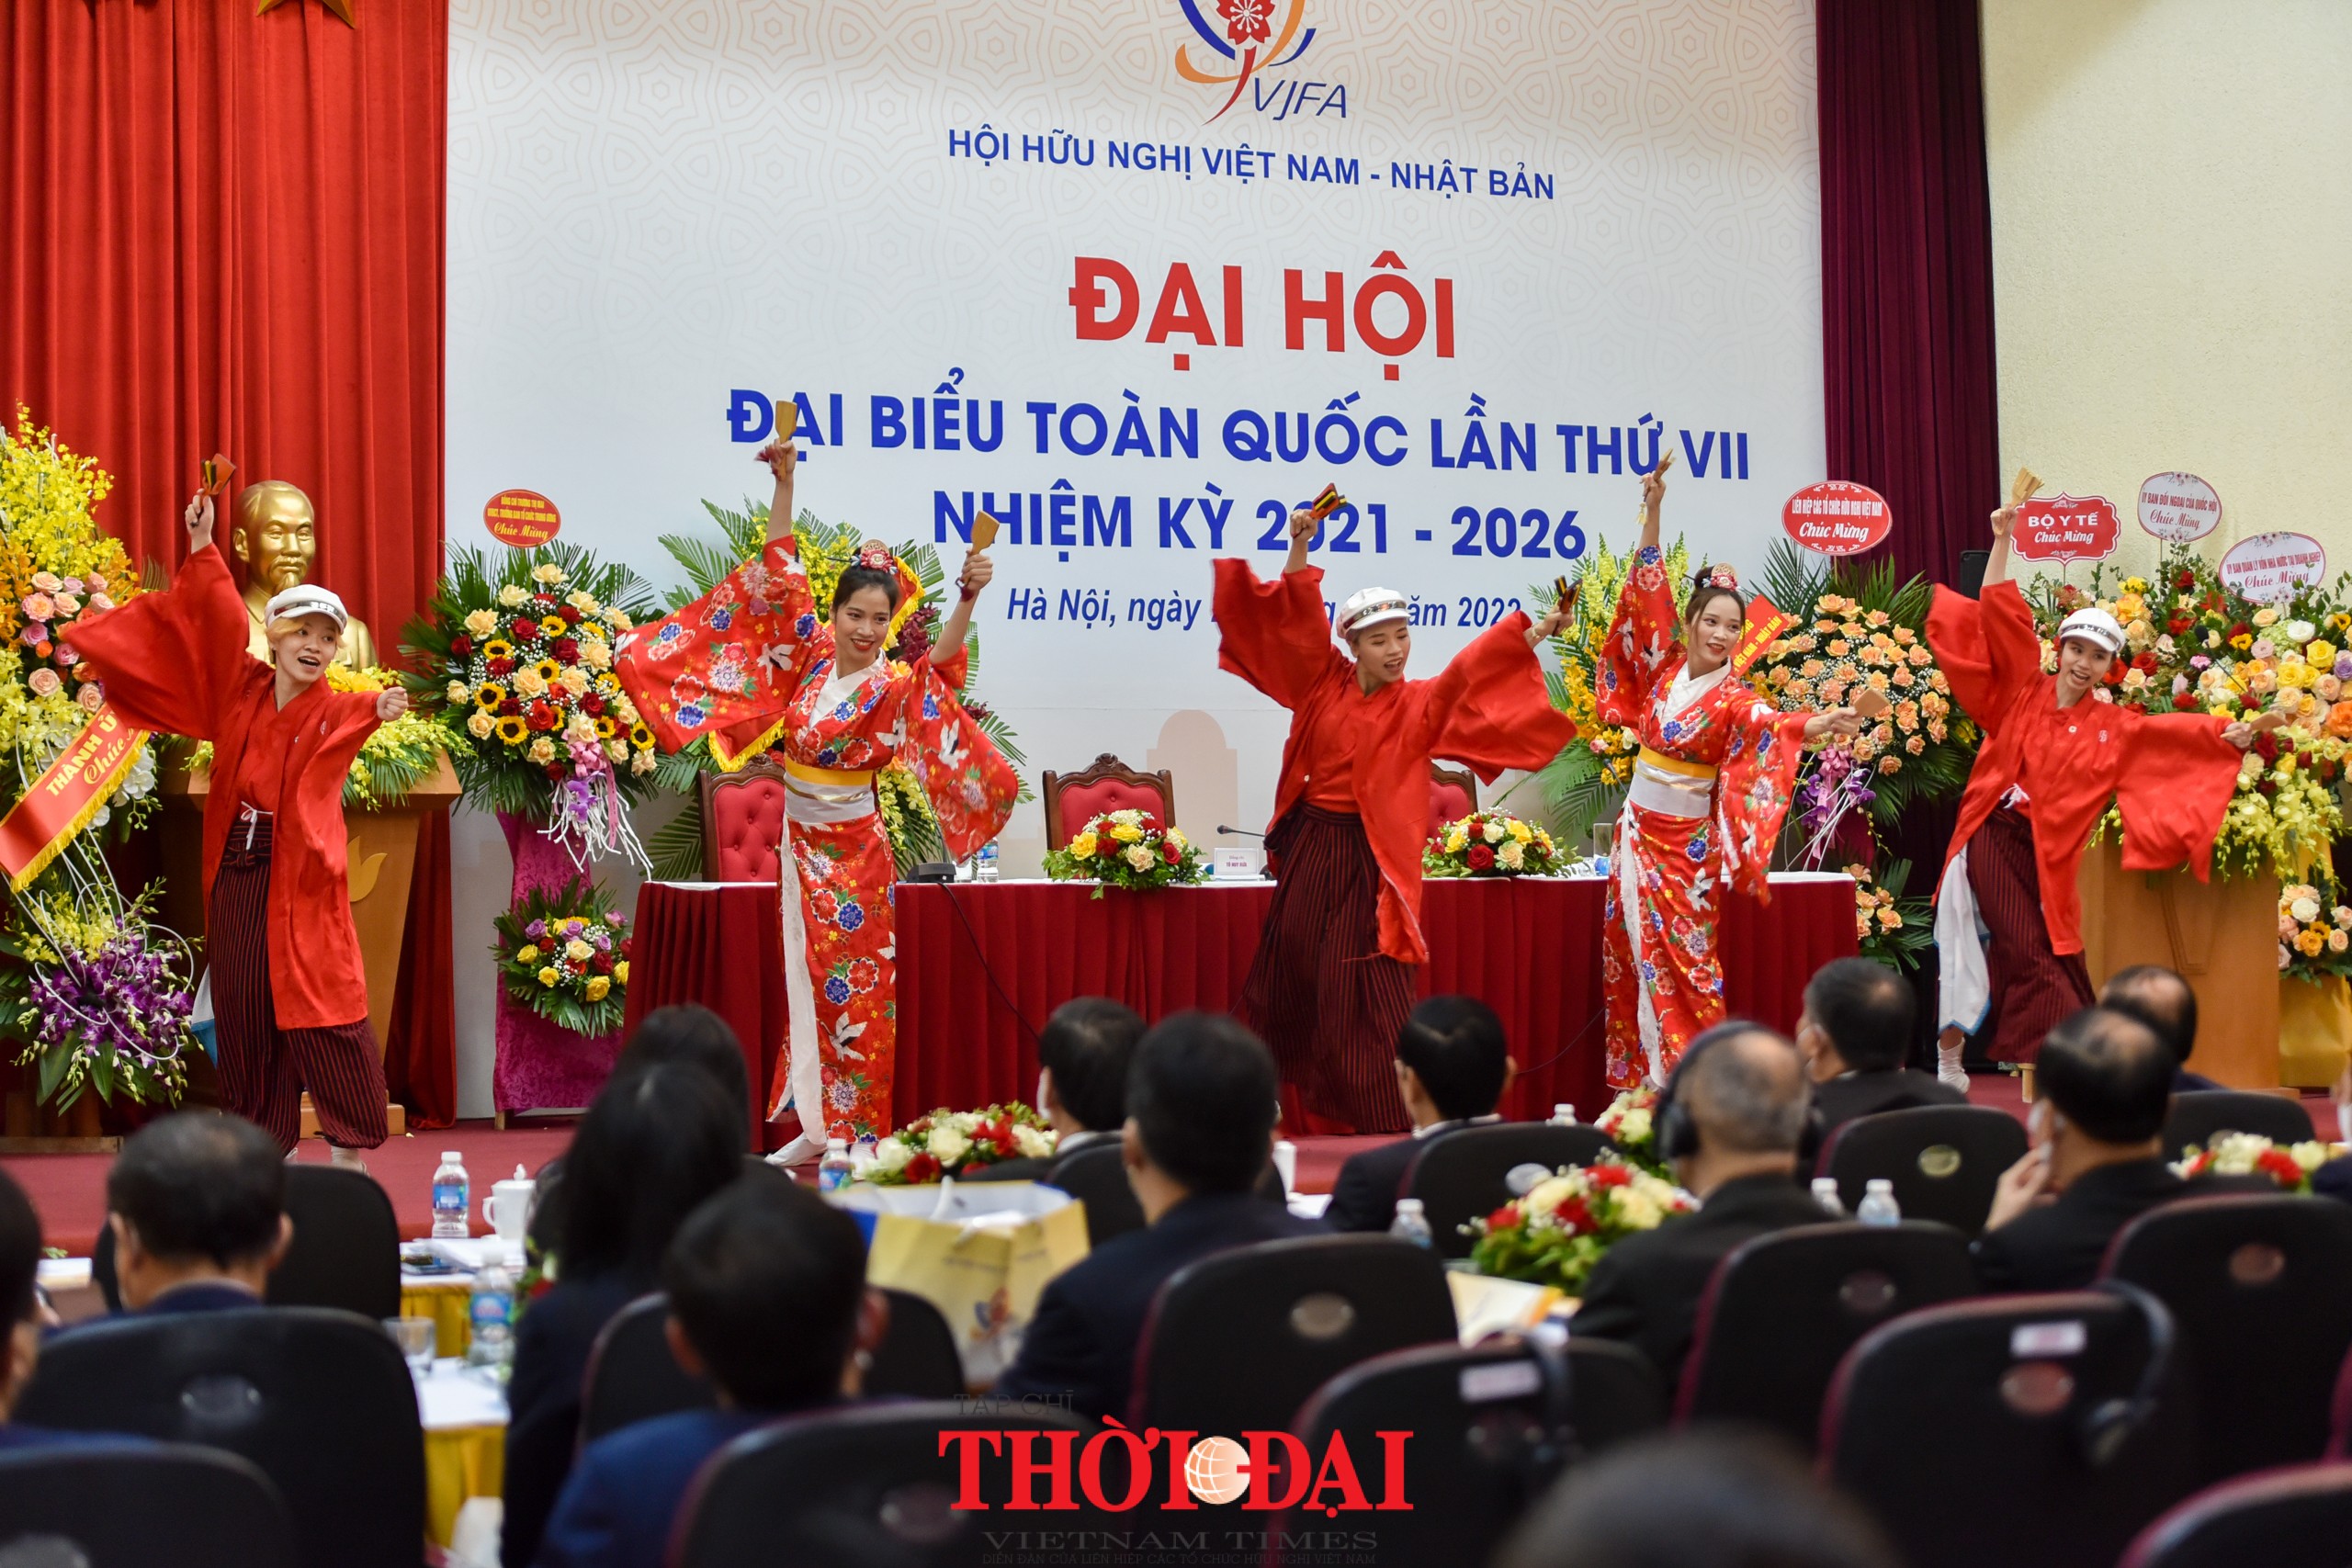 Tăng cường tình hữu nghị, sự quý mến và tin cậy lẫn nhau giữa nhân dân hai nước Việt Nam - Nhật Bản